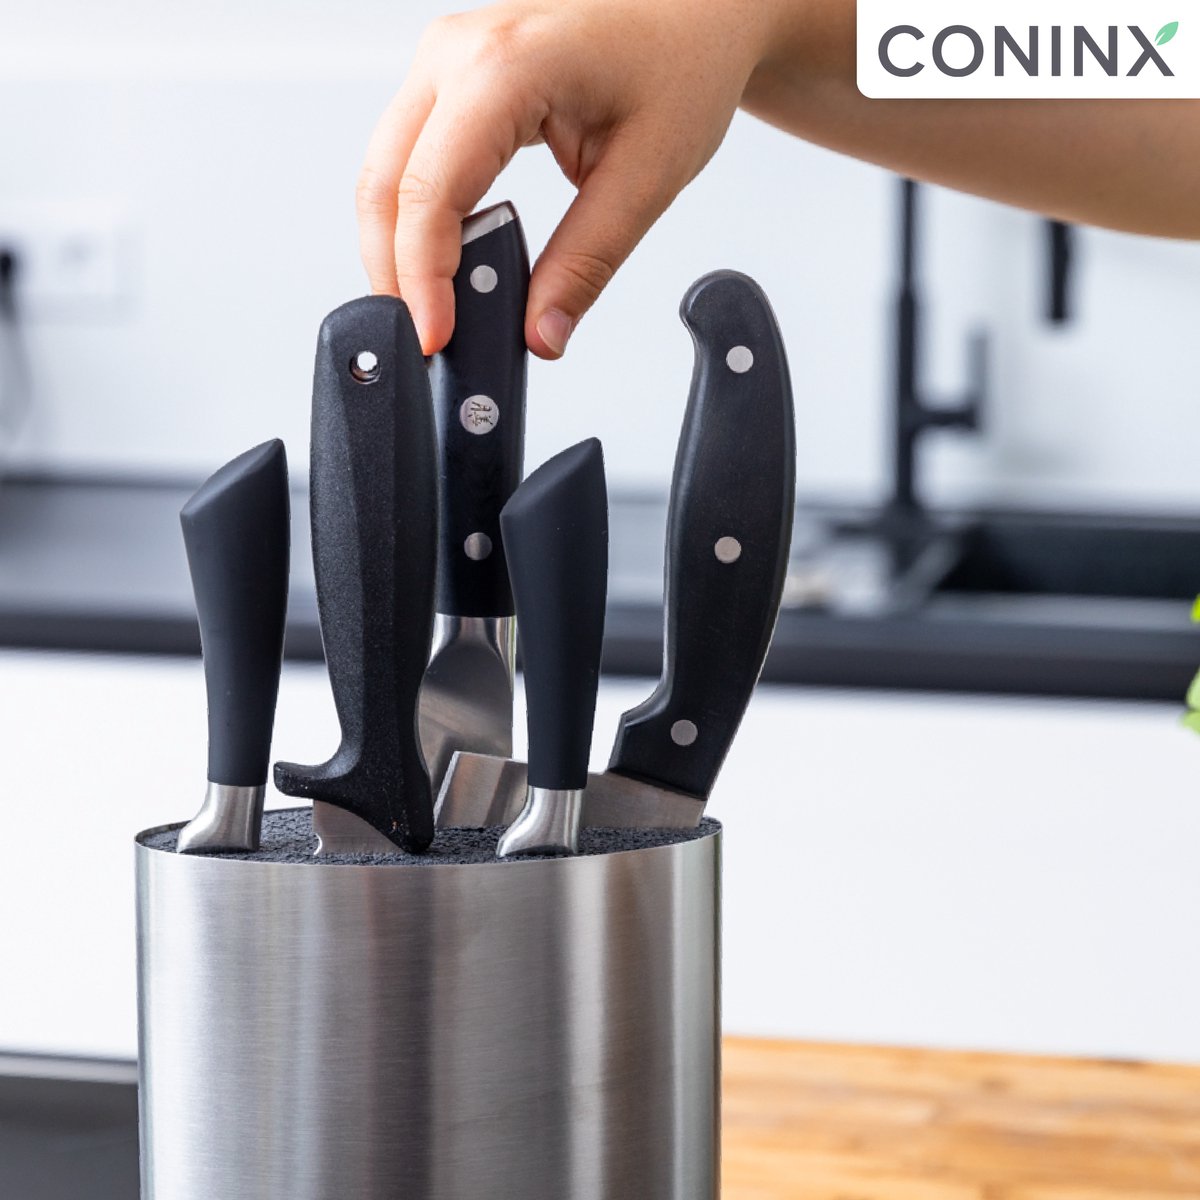 Coninx Bloc Couteaux - Range Couteaux - Bloc Couteaux Cuisine